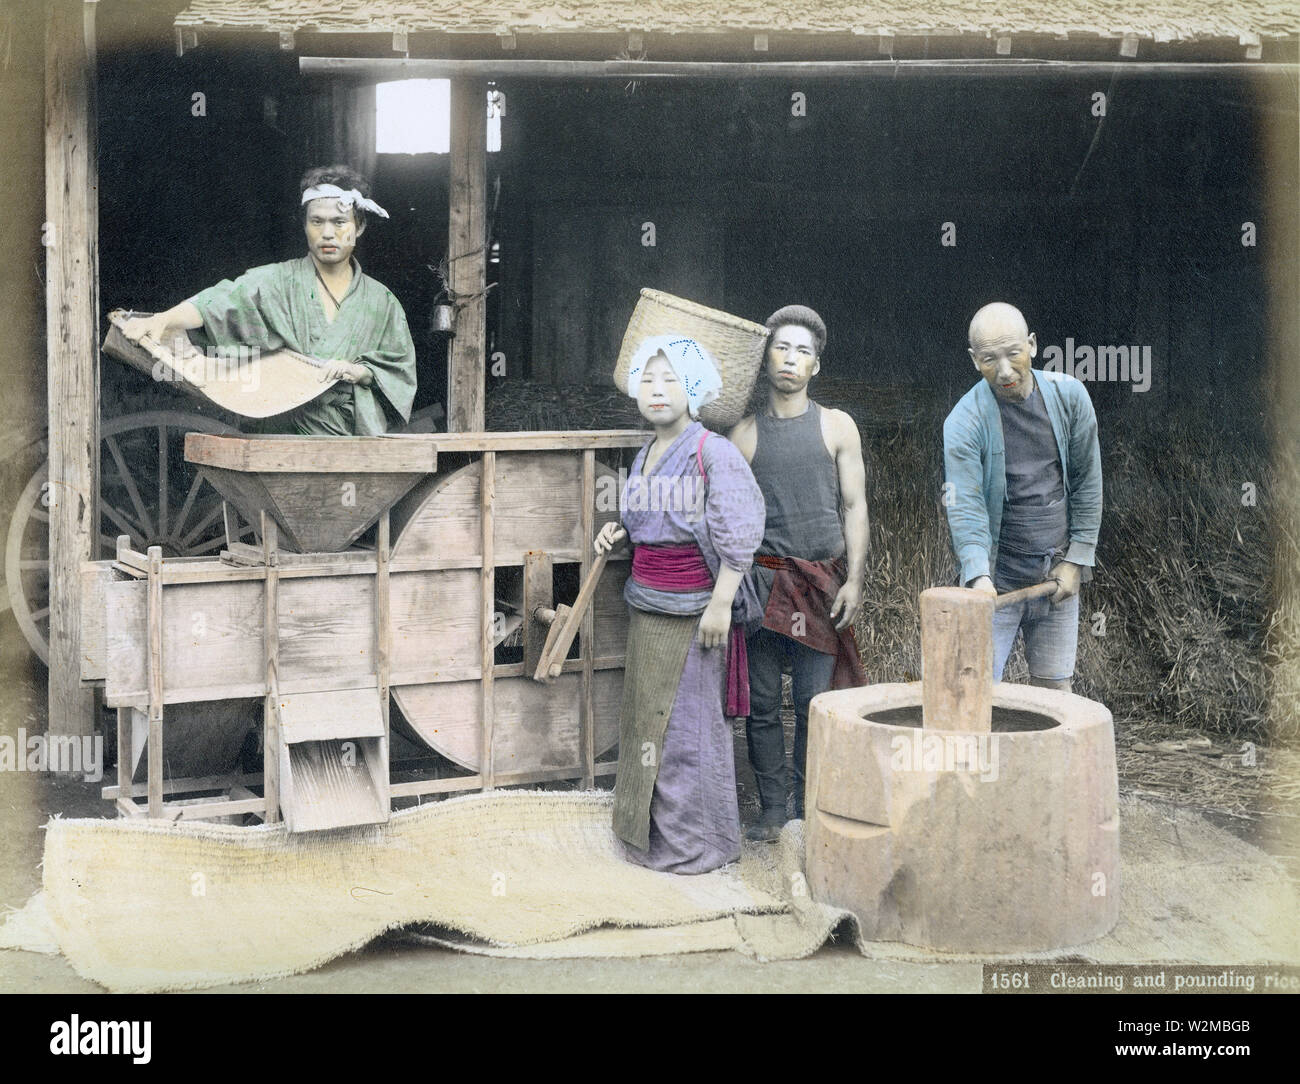 [1880s Japan - Japanische Bauern Worfeln Reis] - Japanische Landwirte sind worfeln Reis mit einem toumi (worfeln Maschine), Ca. In den 1880ern. Der Prozess der Trennung der Körner von der Spreu wurde als "fusen", und bezog eine Person die Fütterung der toumi mit Getreide, während ein anderer der Lüfter gedreht. Der Wind tat sein Übriges. Die Maschine könnte eingestellt werden Wirksamkeit zu erhöhen. 19 Vintage albumen Foto. Stockfoto